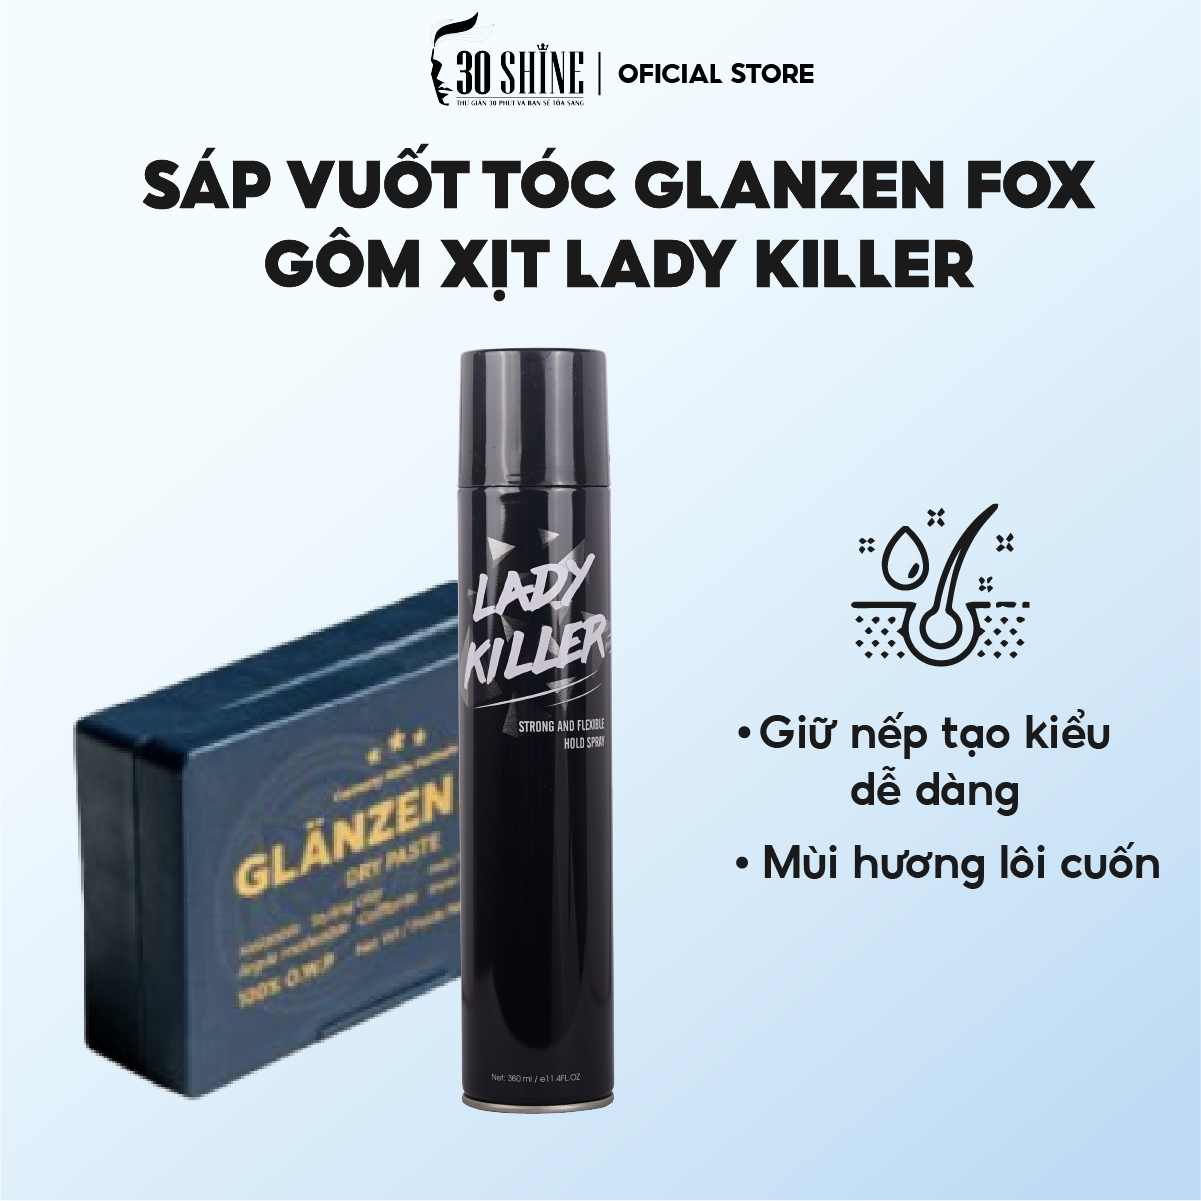 Sáp vuốt tóc Glanzen Fox 56G  Tạo kiểu dễ dàng phù hợp mọi chất tóc